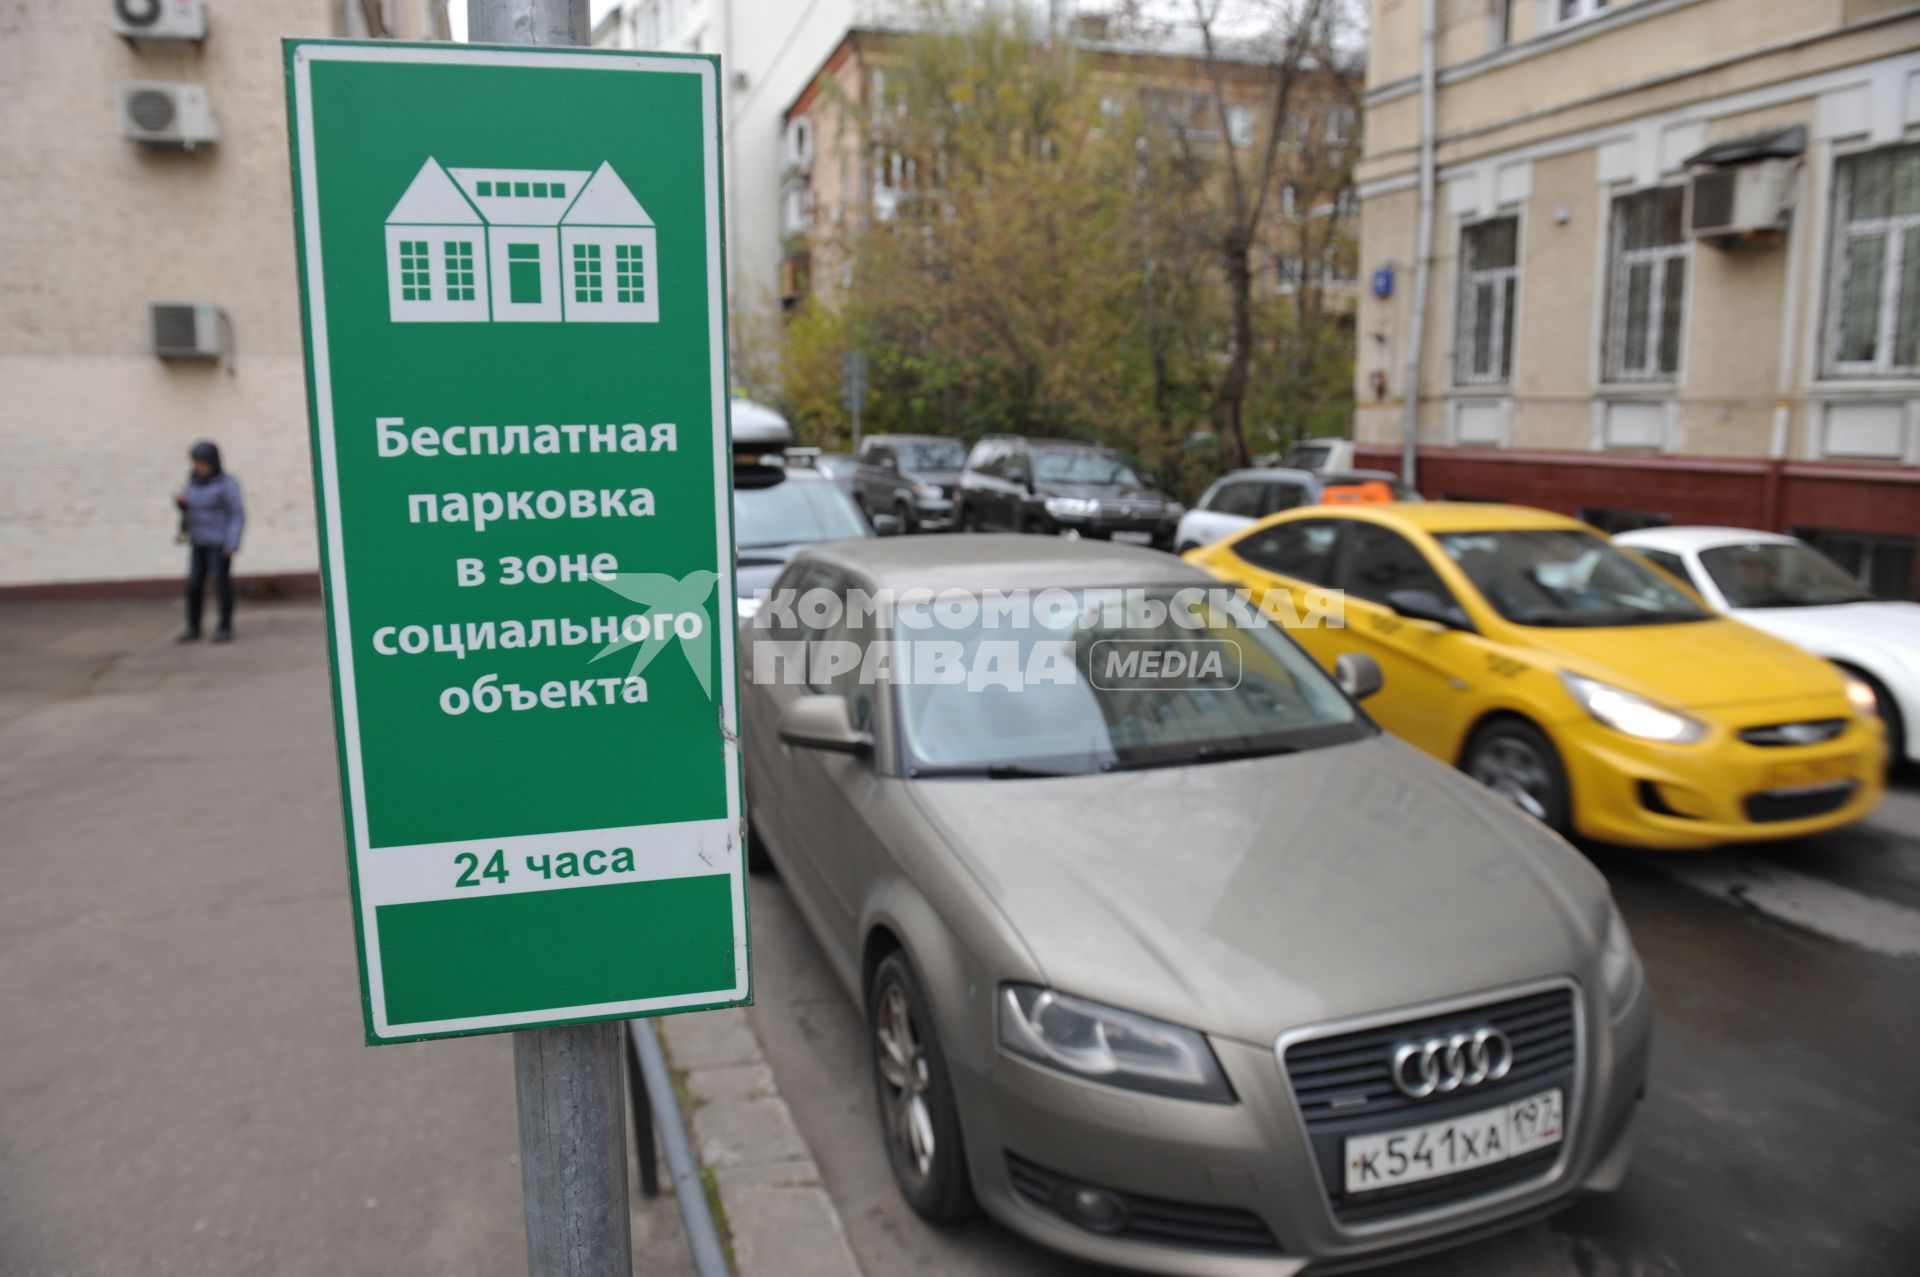 Москва. Табличка `Бесплатная  парковка в зоне социального объекта` на одной из улиц города.